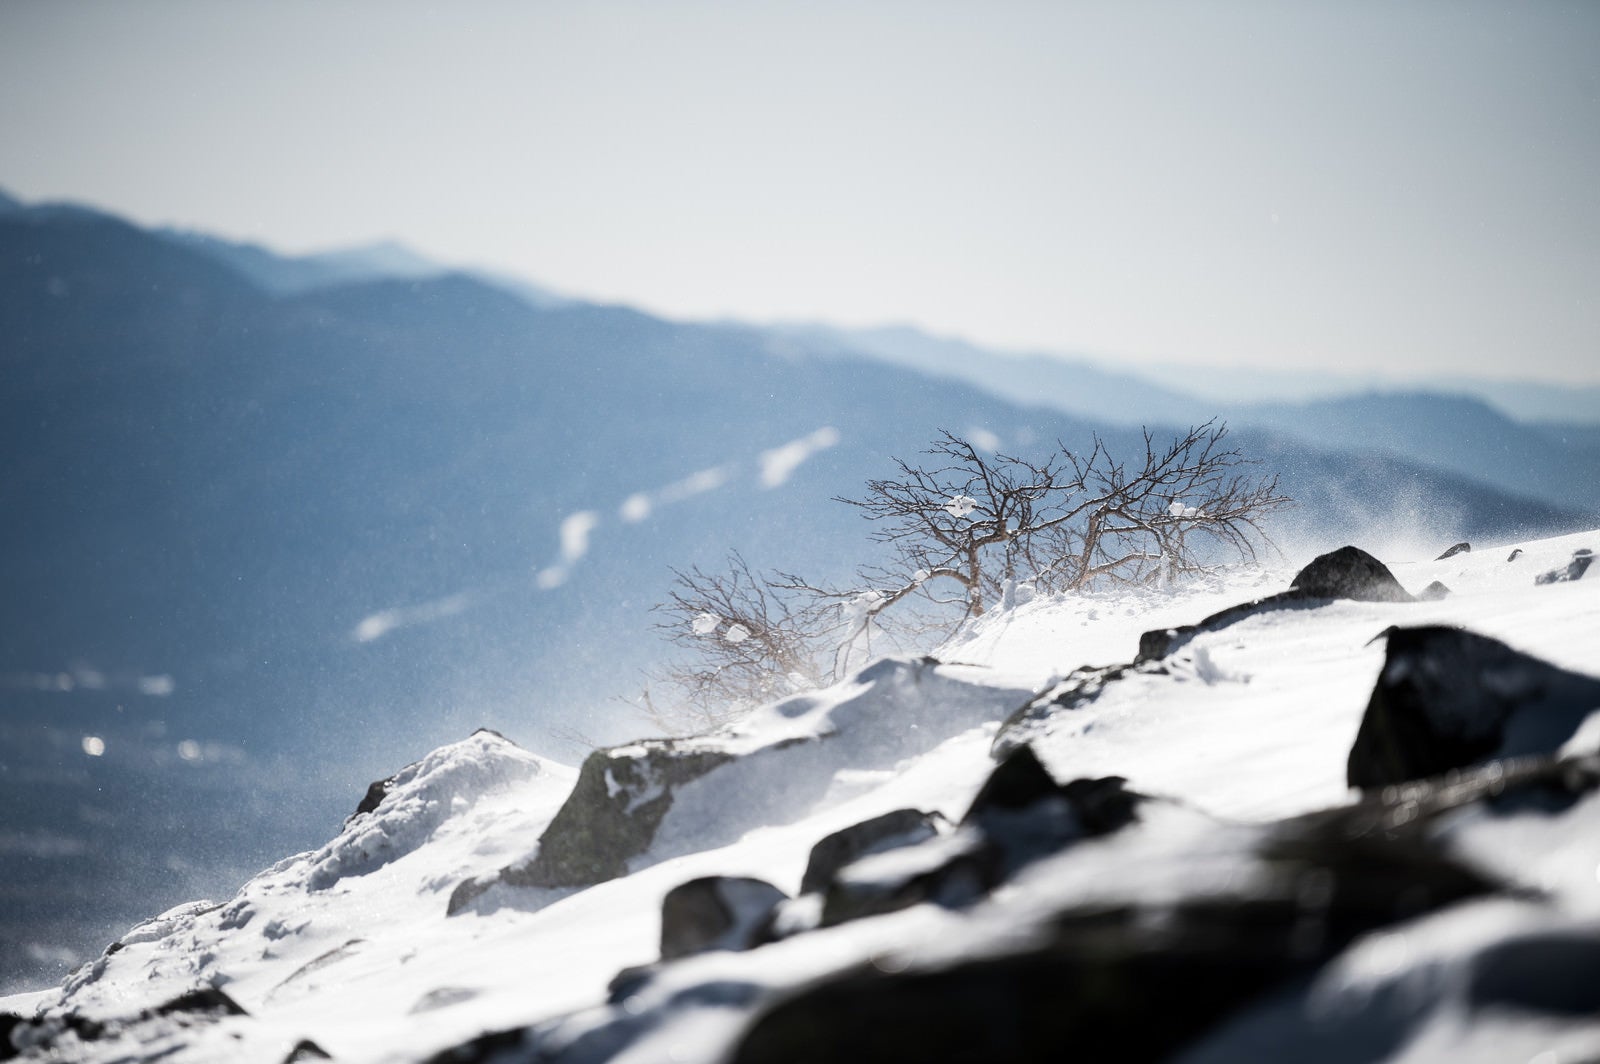 「厳冬期の蓼科山頂で風雪を耐え忍ぶ木々」の写真